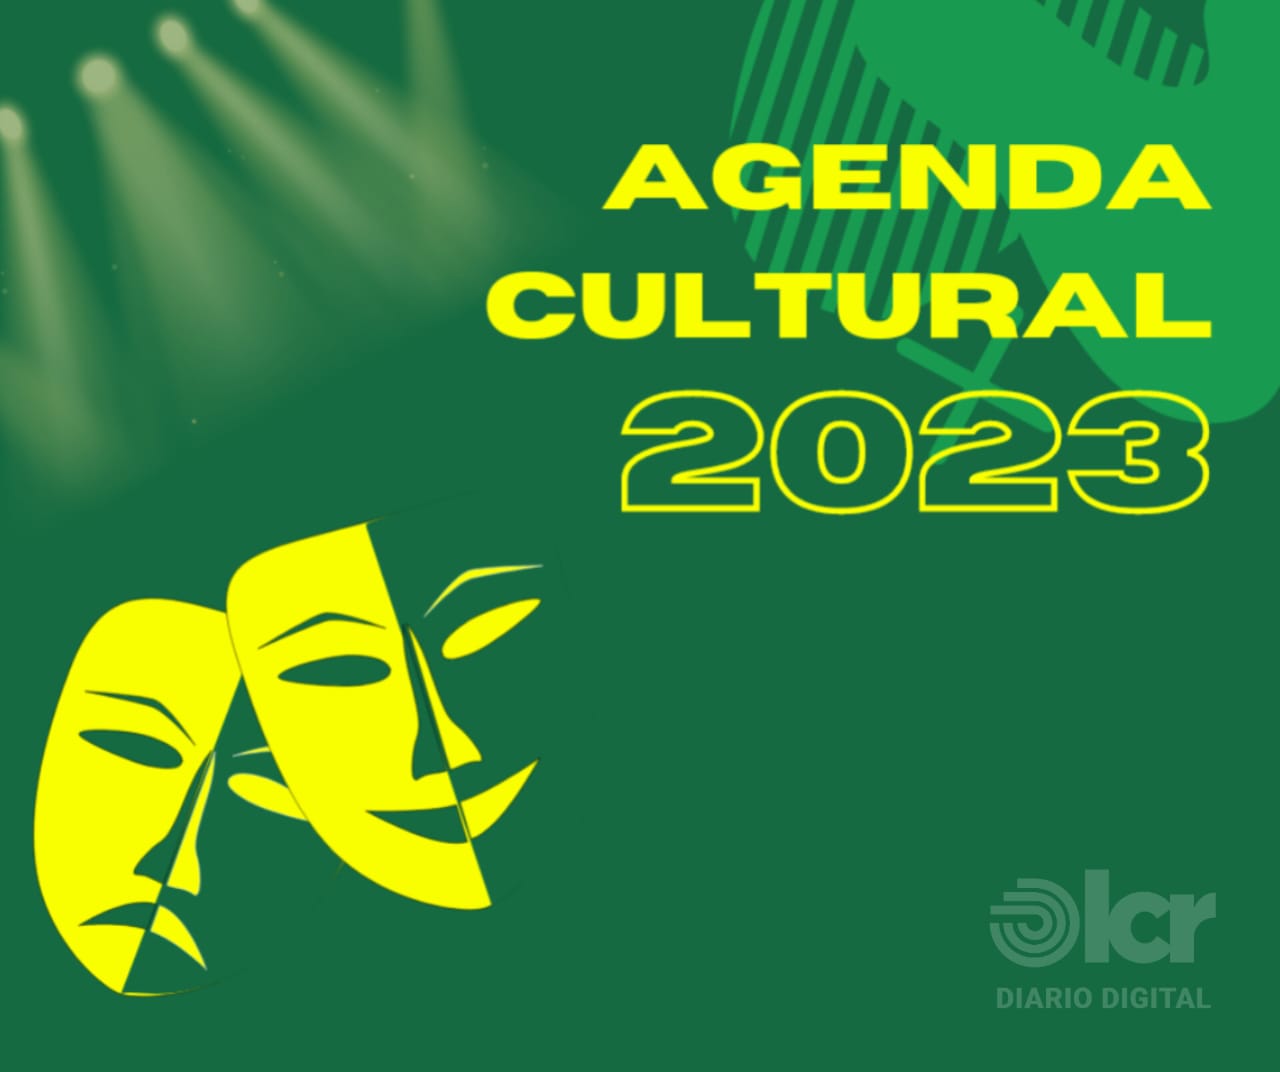 La agenda Cultural de la zona